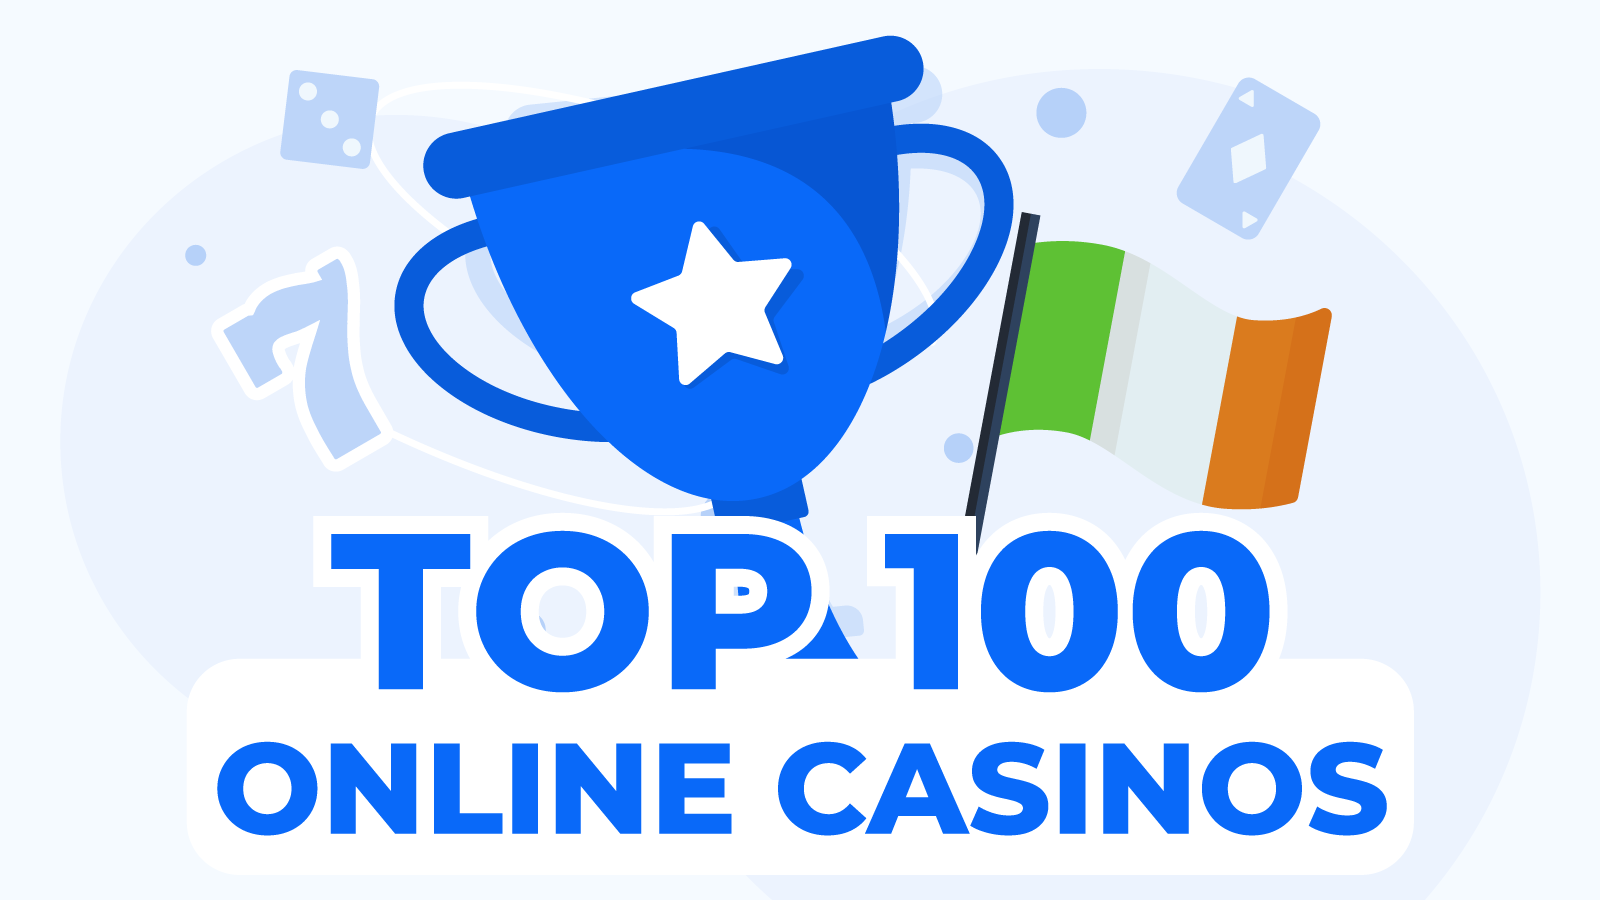 Top 100 Online Casinos | Best Online Casinos in Ireland